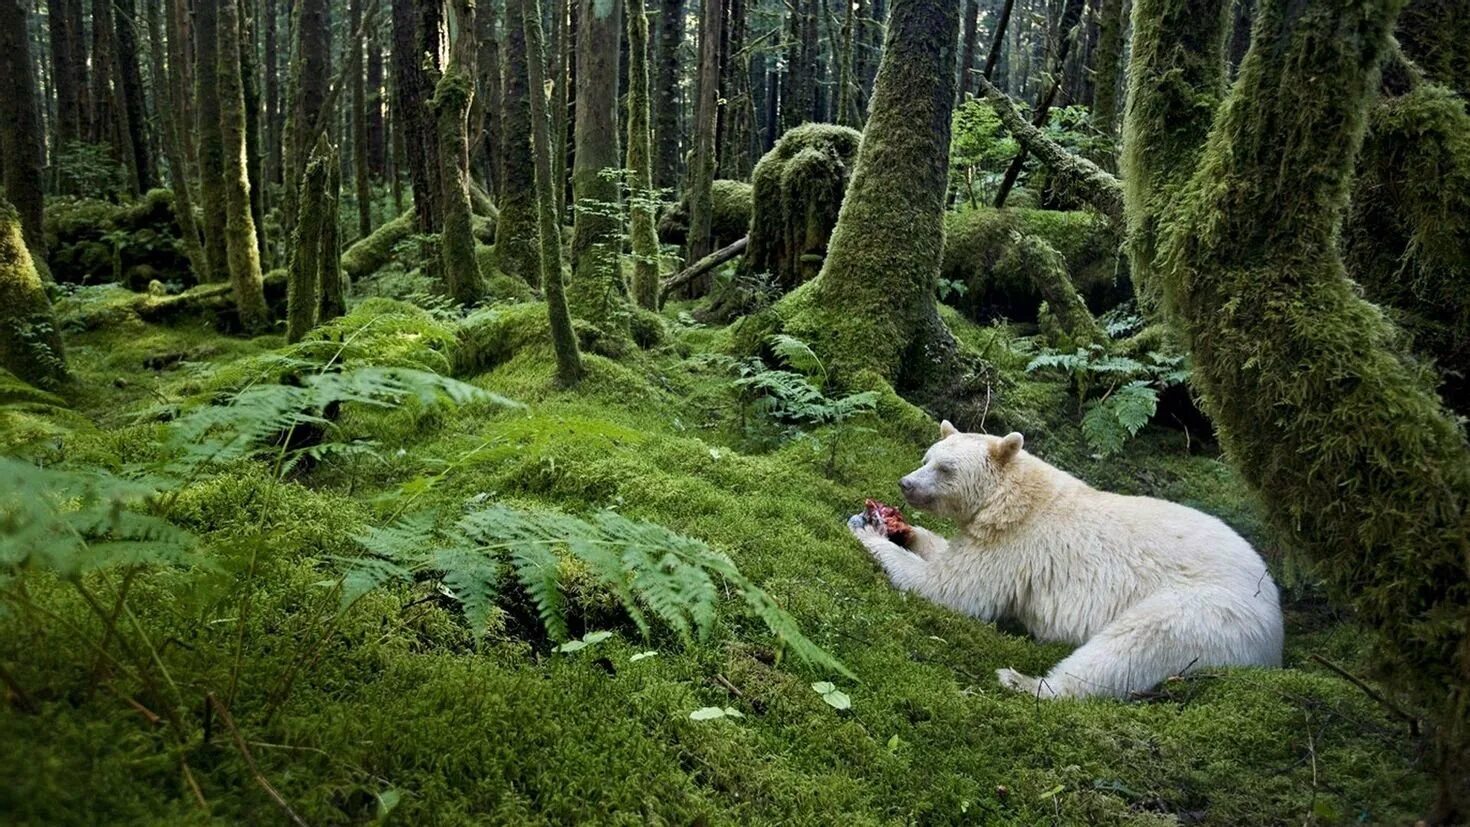 Great Bear Rainforest Канада. Дождевой лес Британская Колумбия. Звери в лесу. Лесные обитатели.